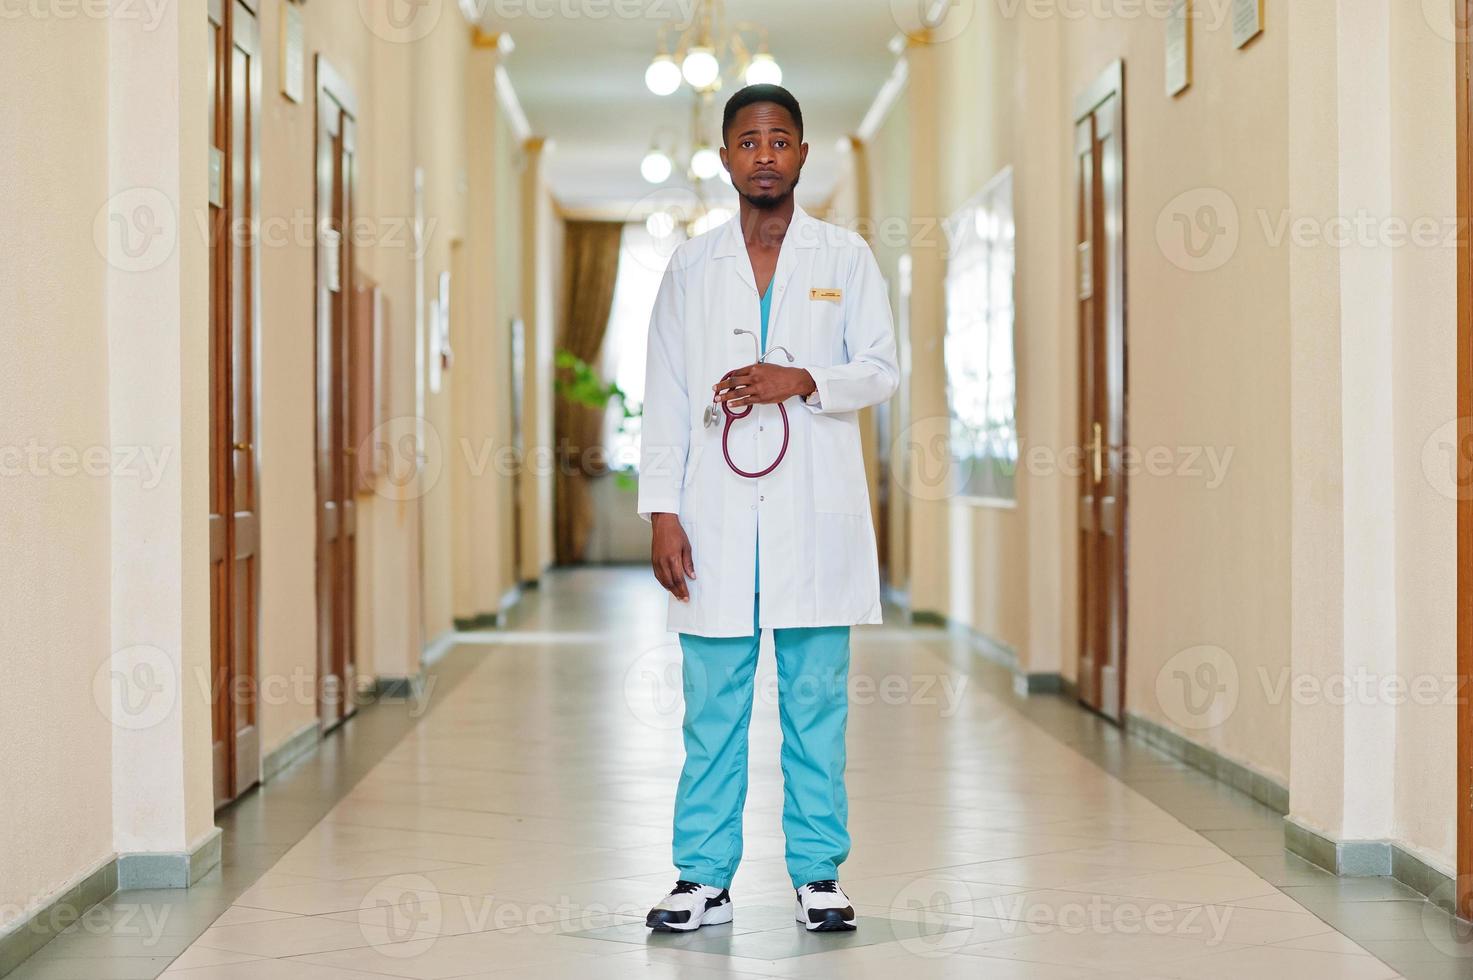 professioneller afrikanischer männlicher arzt im krankenhaus. medizinisches gesundheitsgeschäft und arztdienst afrikas. foto